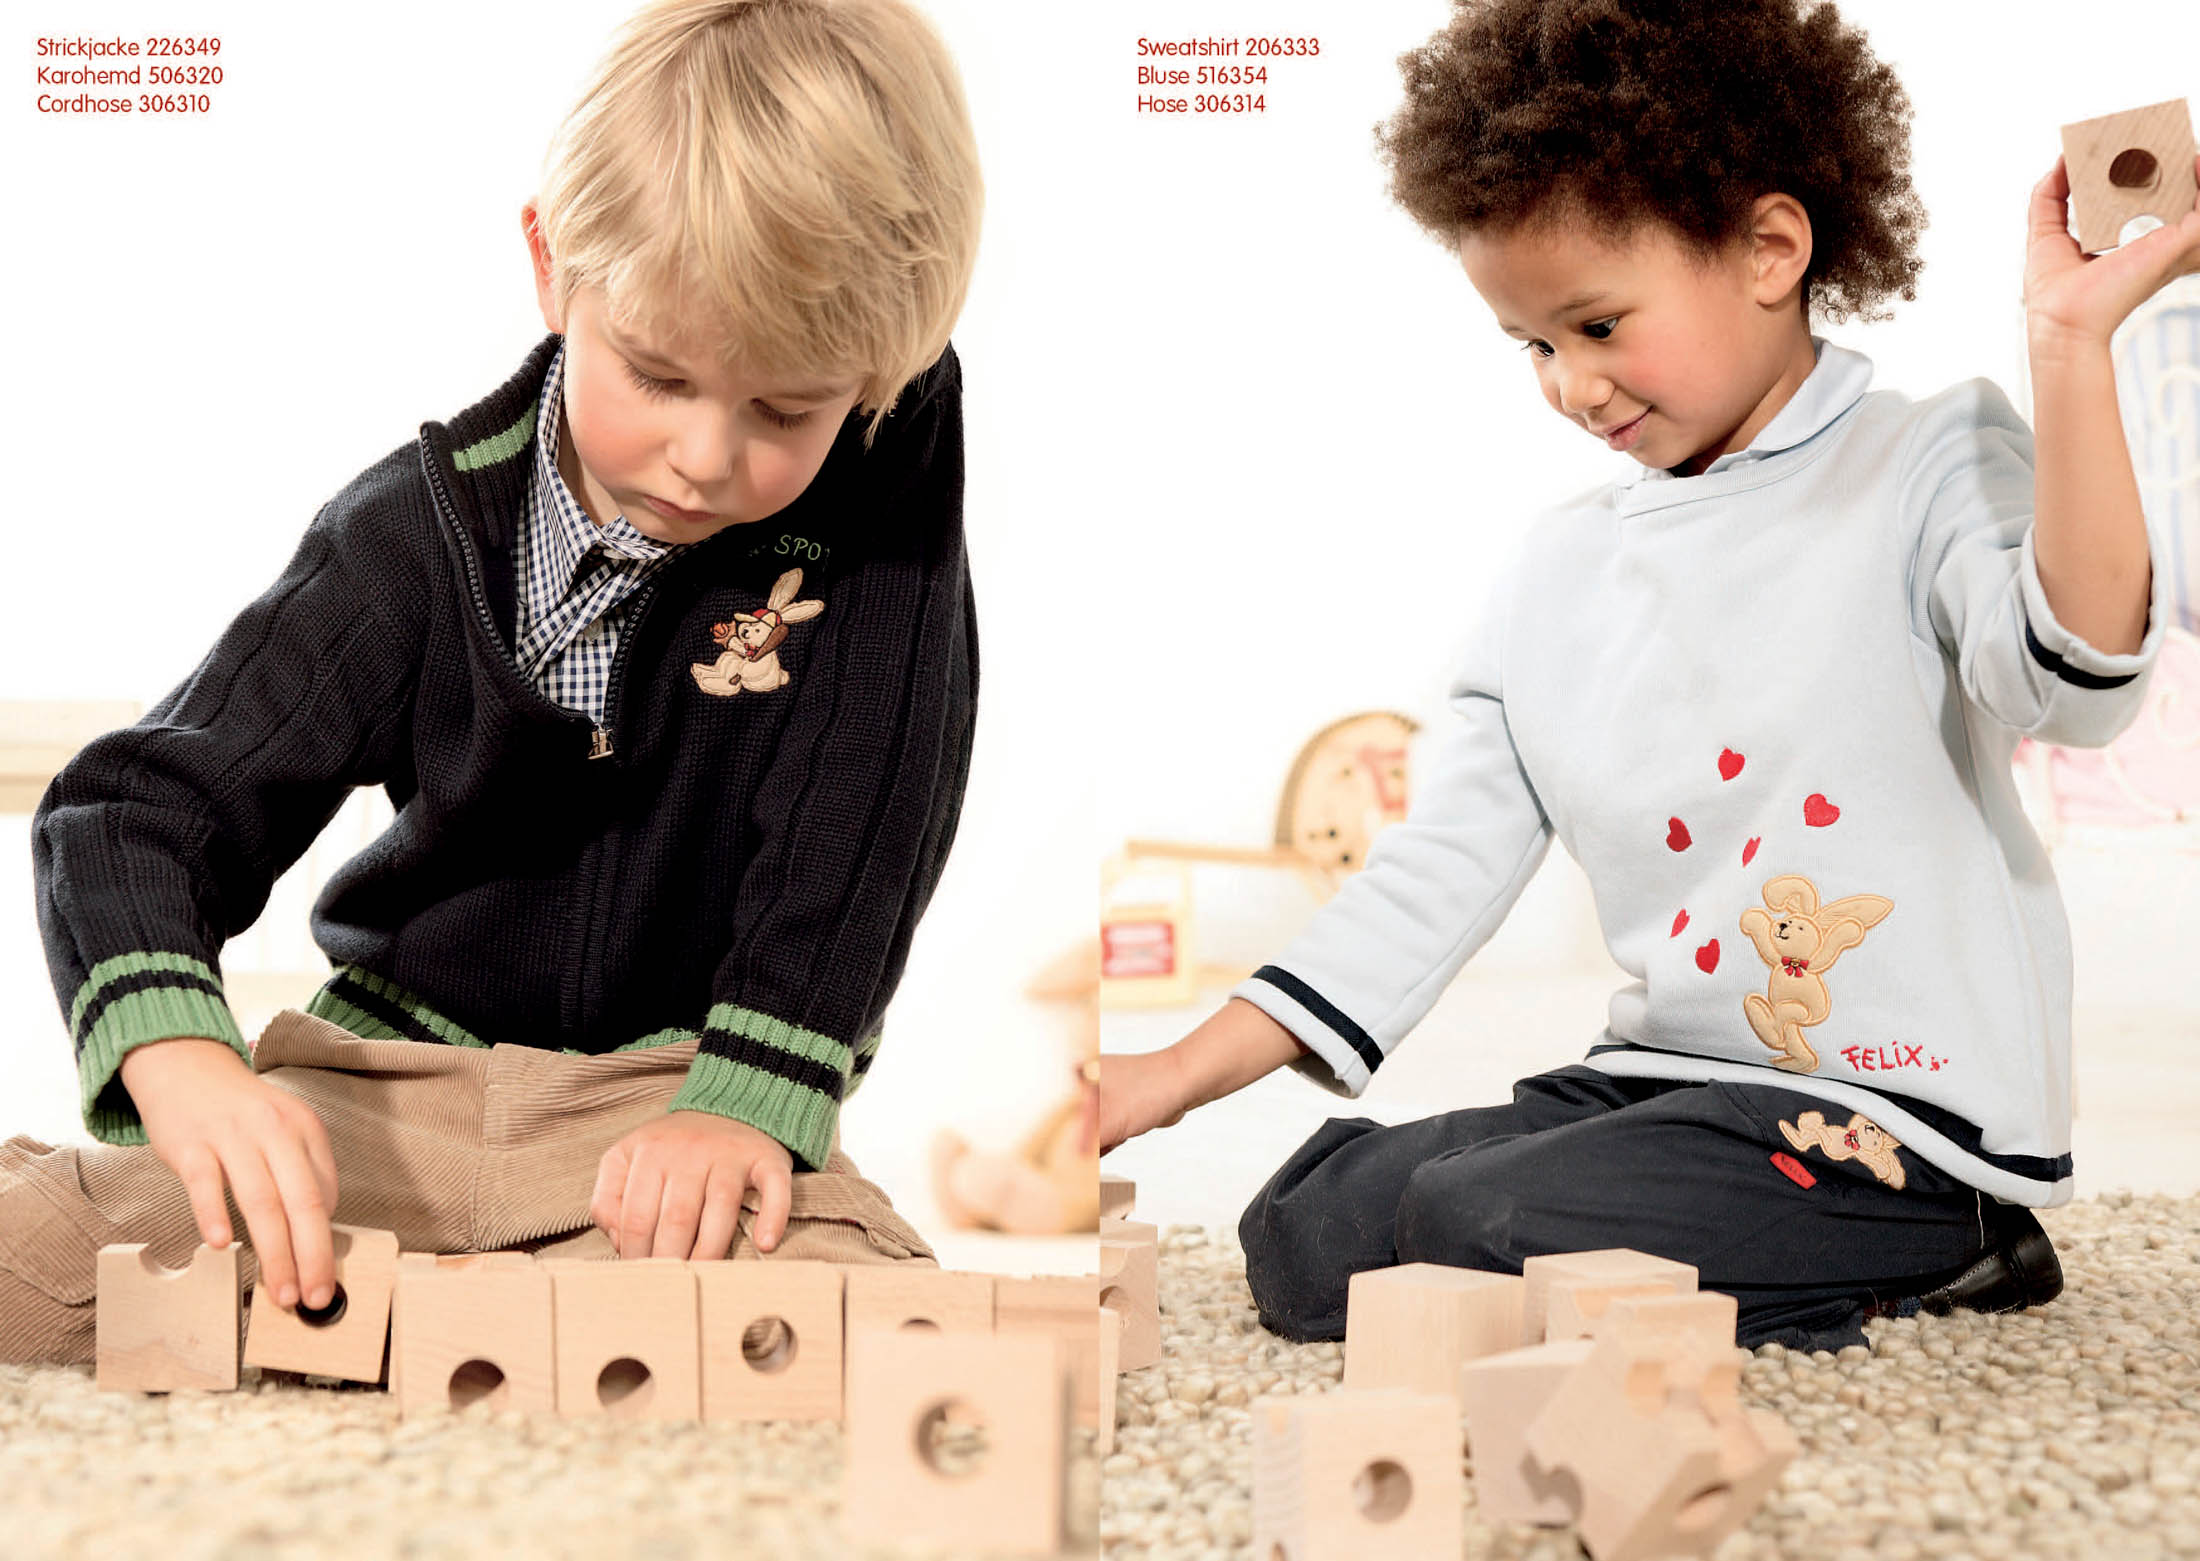 Zwei kleine Kinder, ein Junge und ein Mädchen, spielen mit Holzklötzen auf einem Teppichboden. Der Junge im Pullover baut eine Struktur, während das Mädchen, das ein T-Shirt mit Herzaufdruck trägt, einen Klotz hält. © Fotografie Tomas Rodriguez